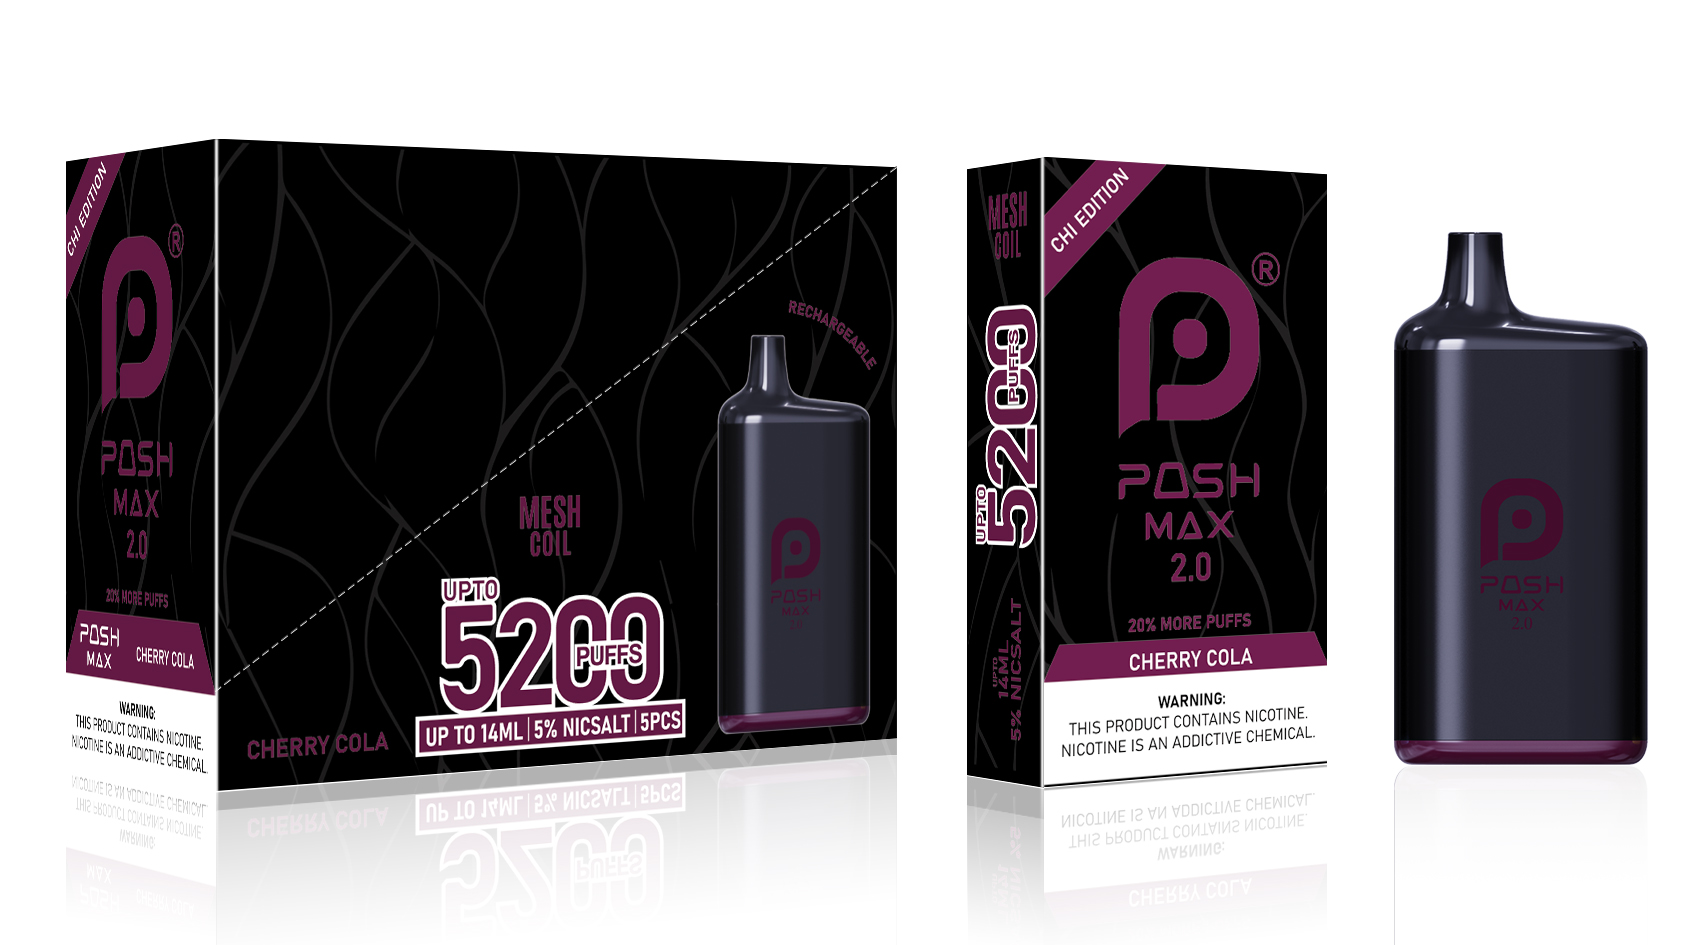 Posh MAX 2.0 CHI Edition Cherry Cola 5x1 – 70ML/Box